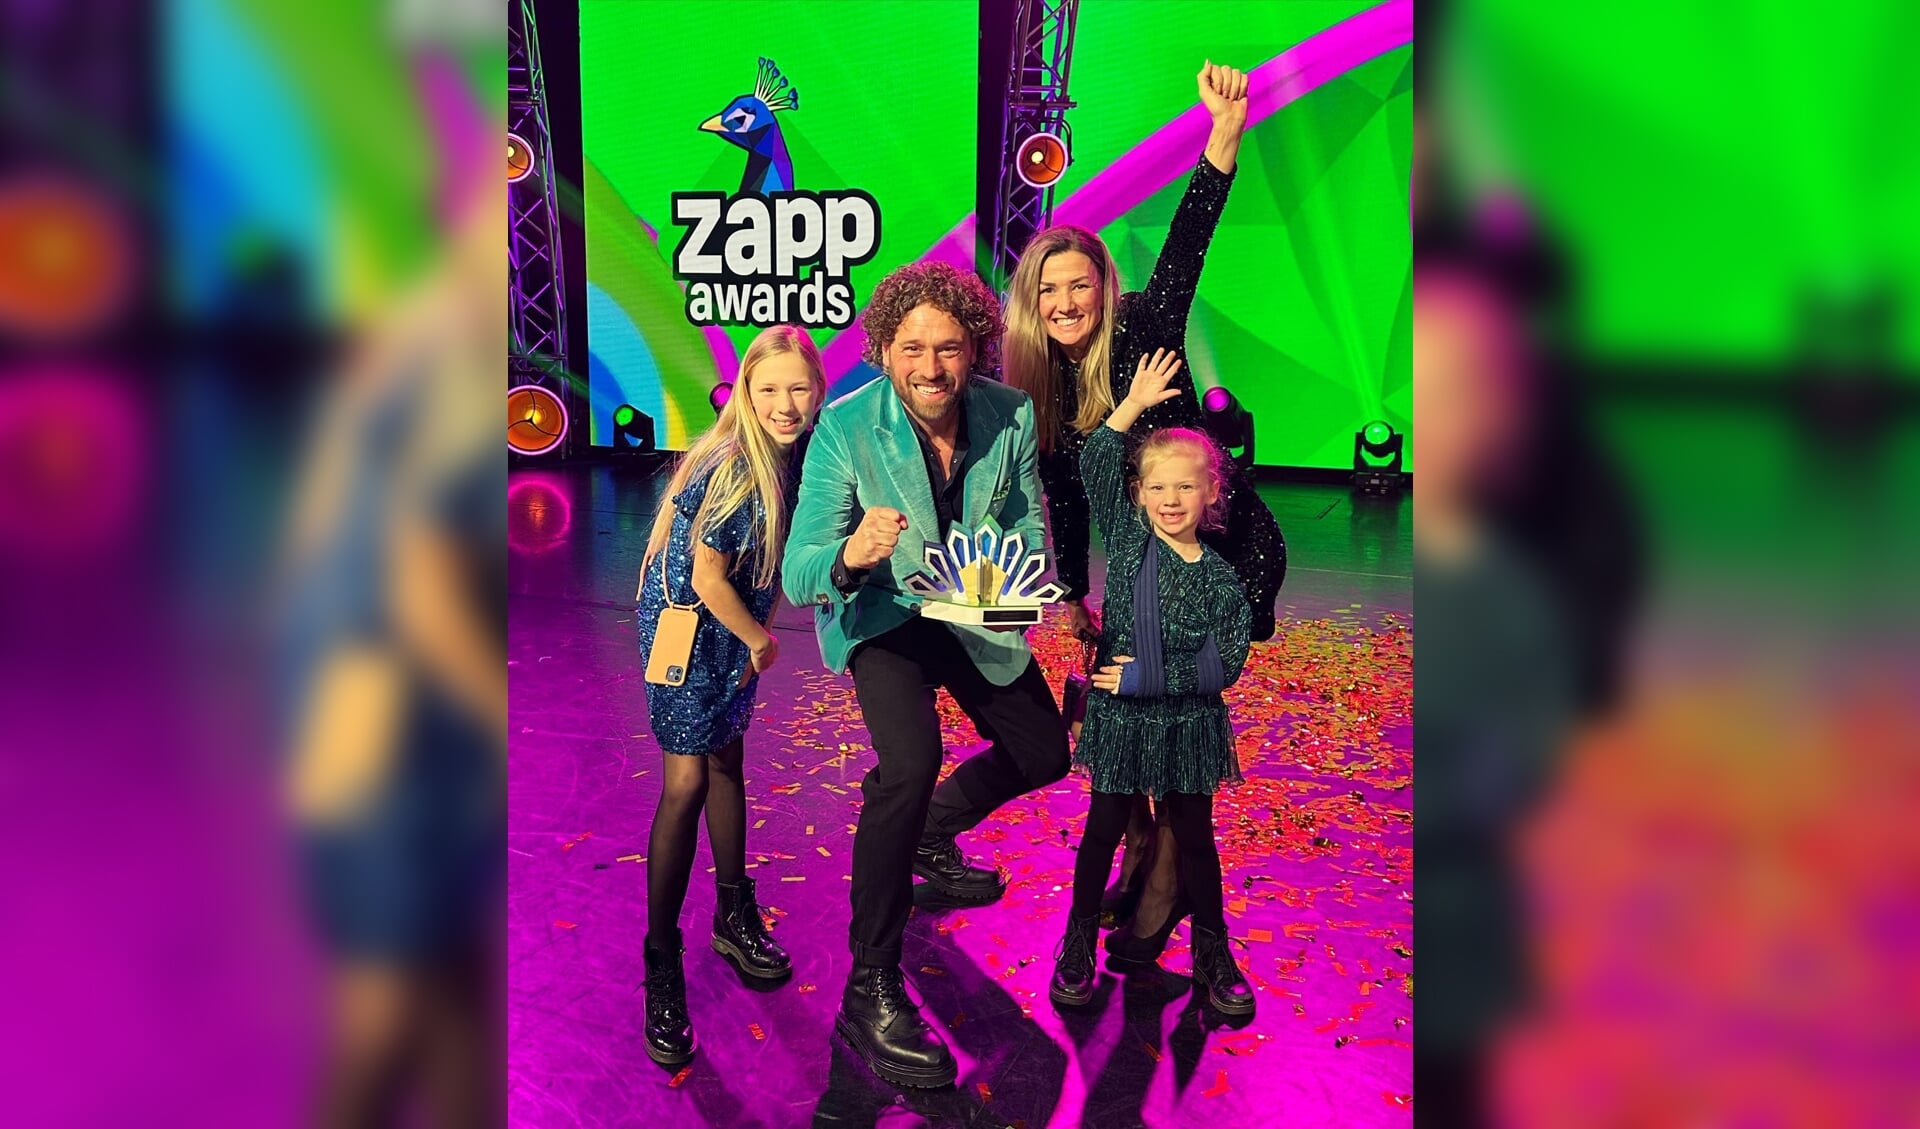 Meester Jesper met zijn vrouw en kinderen bij de Zapp awards